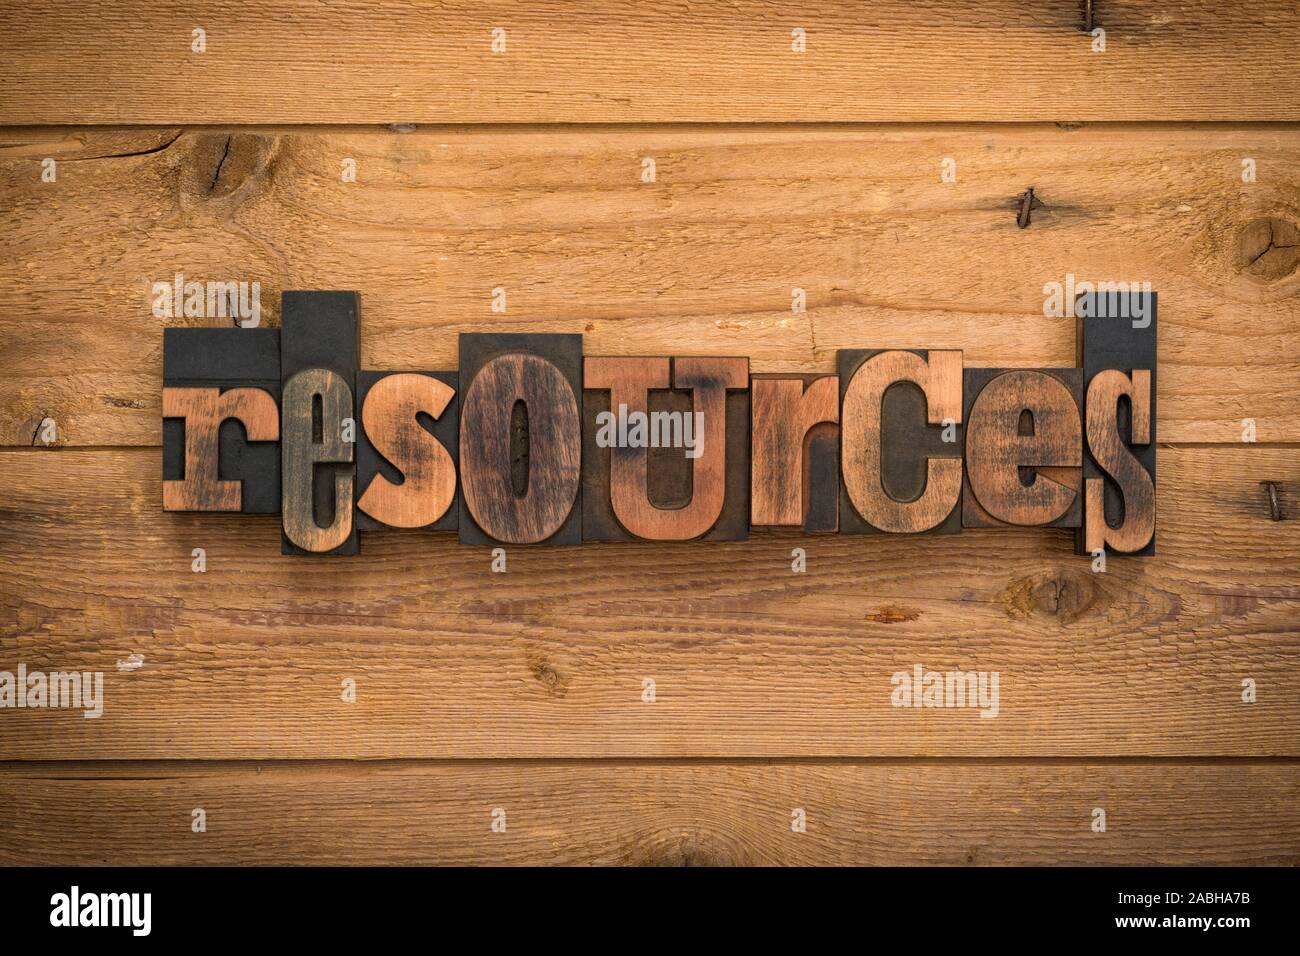 Ressourcen, einzelnes Wort mit Vintage Buchdruck Blöcke auf rustikalem Holz Hintergrund geschrieben. Stockfoto